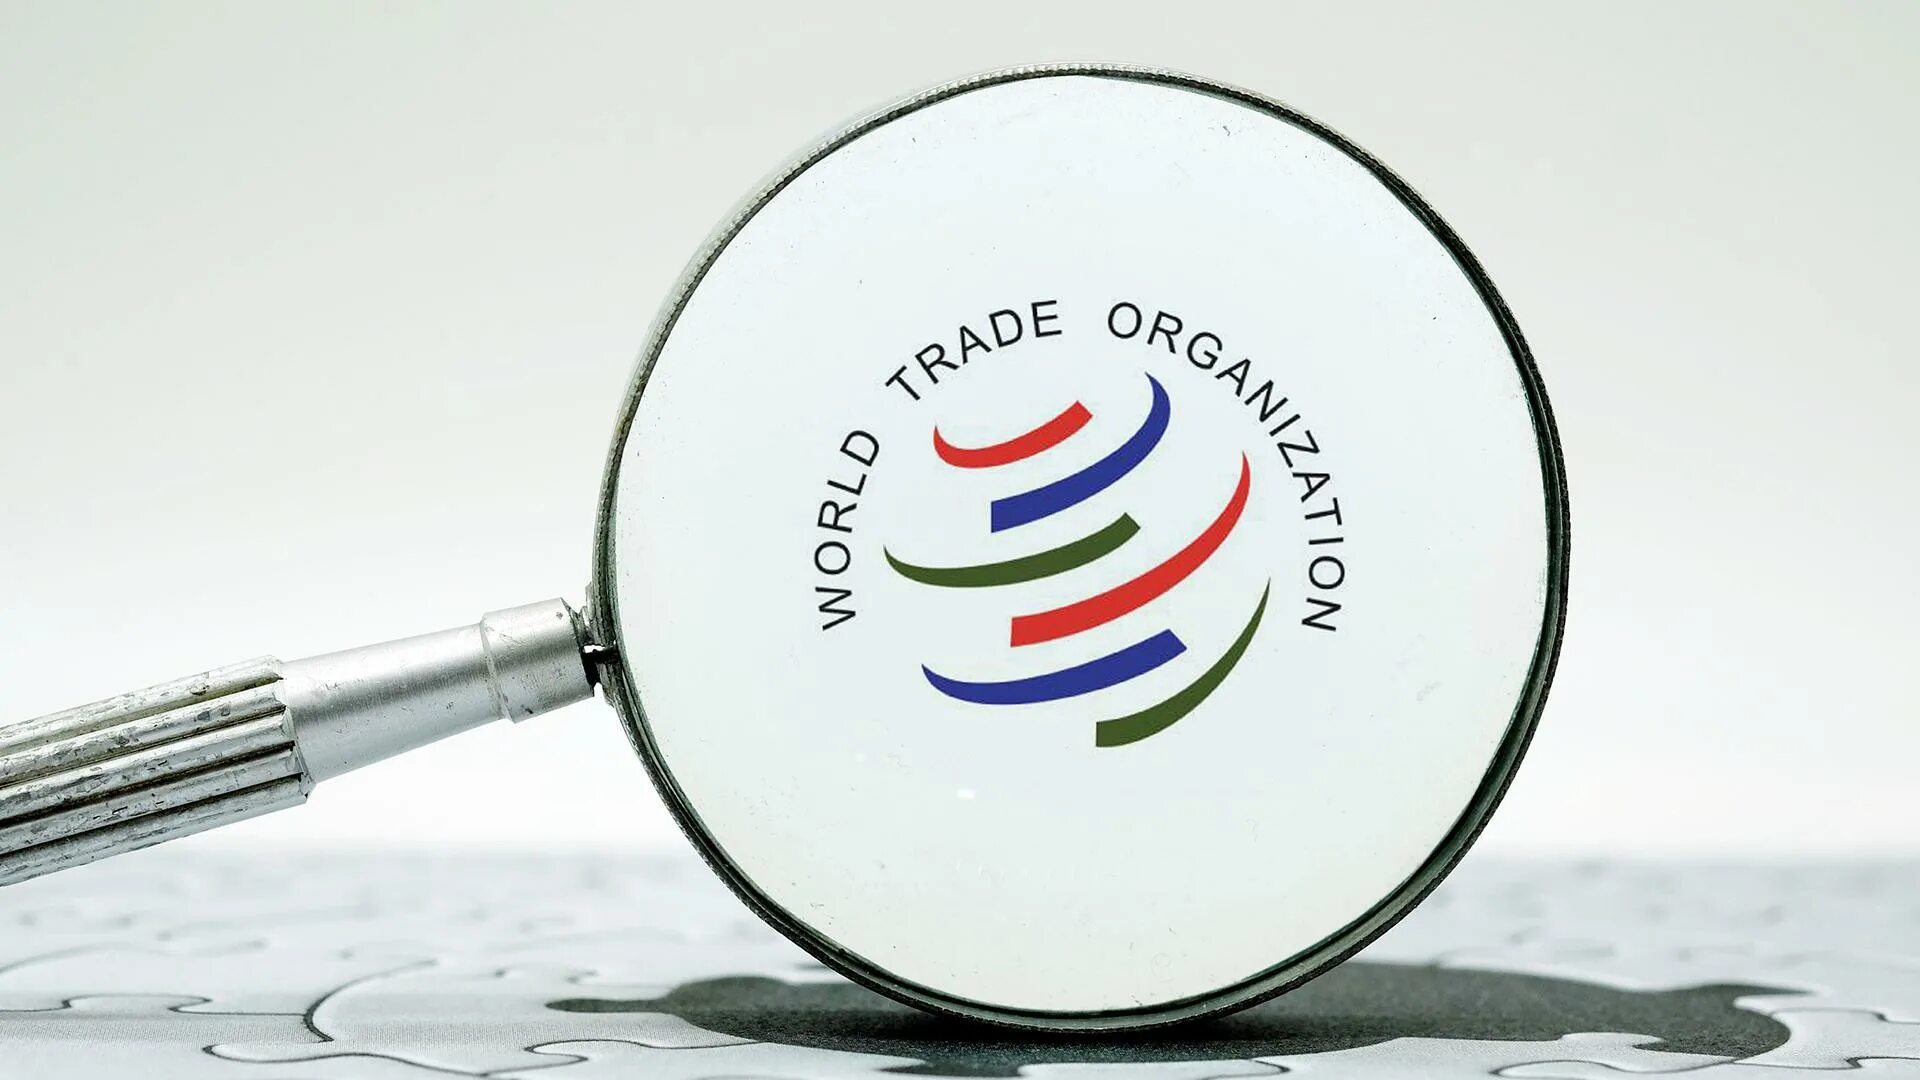 Новая торговая организация. Всемирная торговая организация - ВТО (World trade Organization - WTO).. Переговоры ВТО. ВТО эмблема. ВТО картинки.